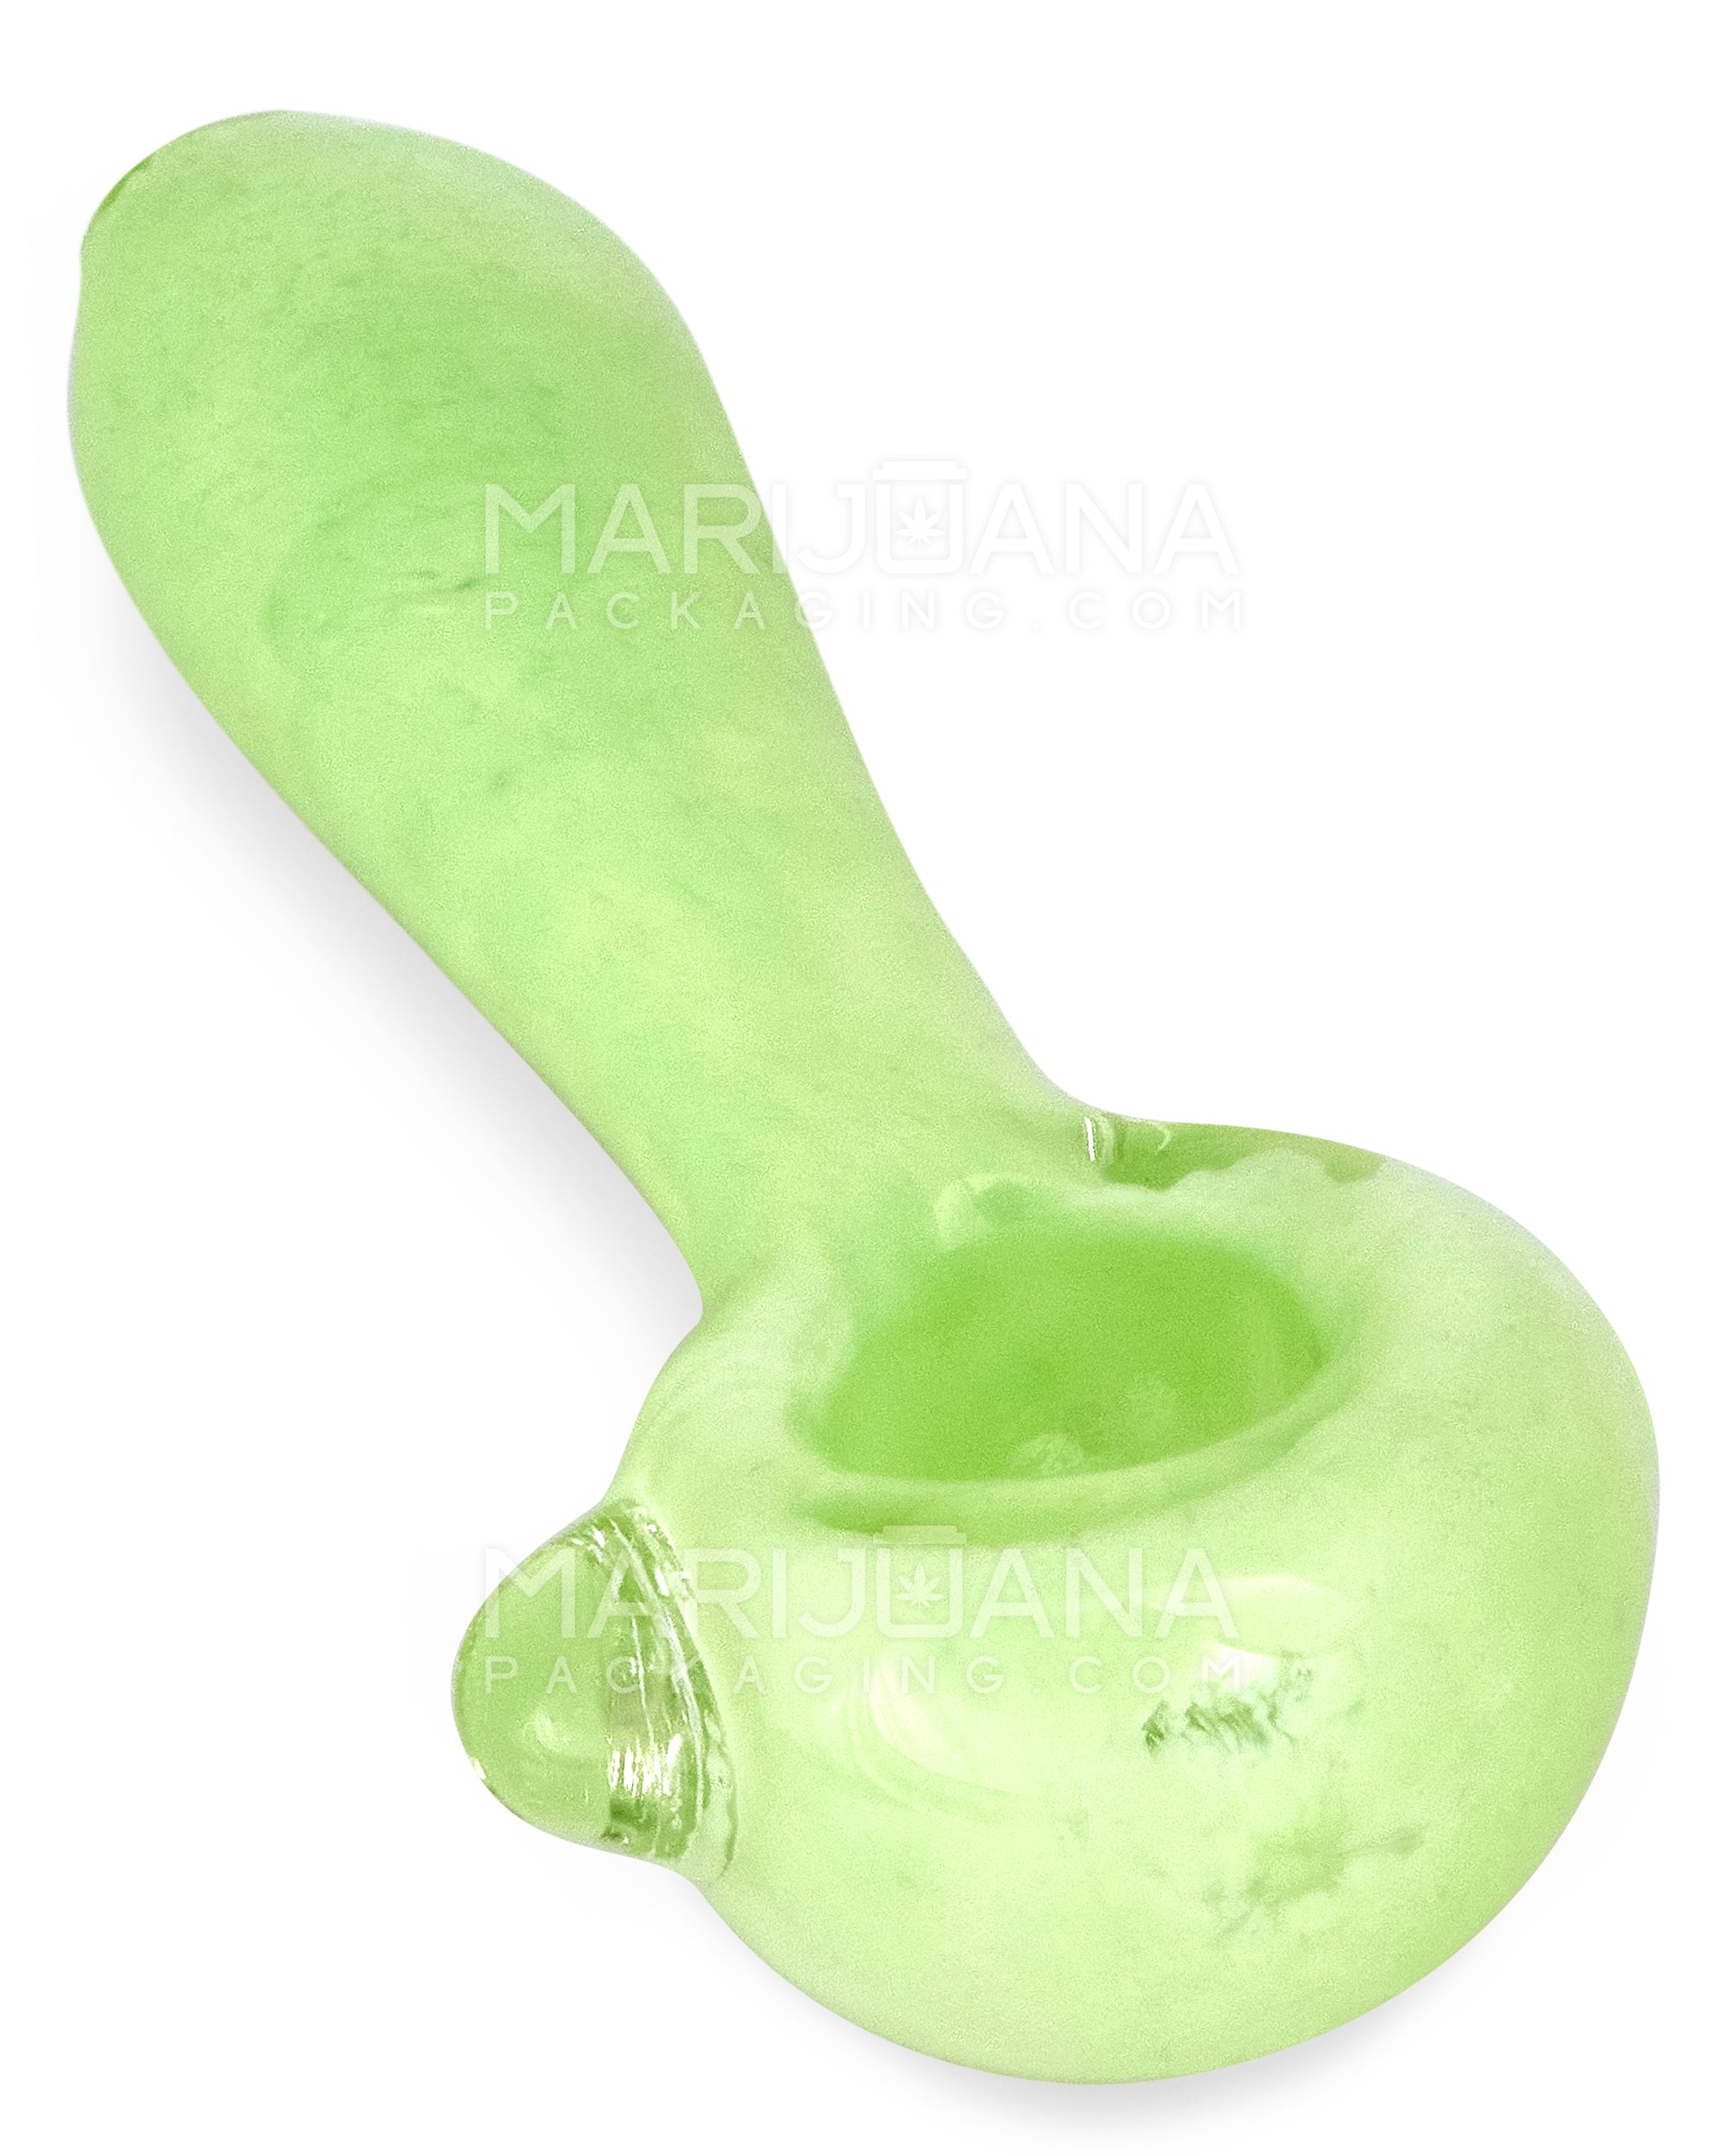 Frit Spoon Hand Pipe w/ Knocker | 4in Long - Glass - Milky Green - 1